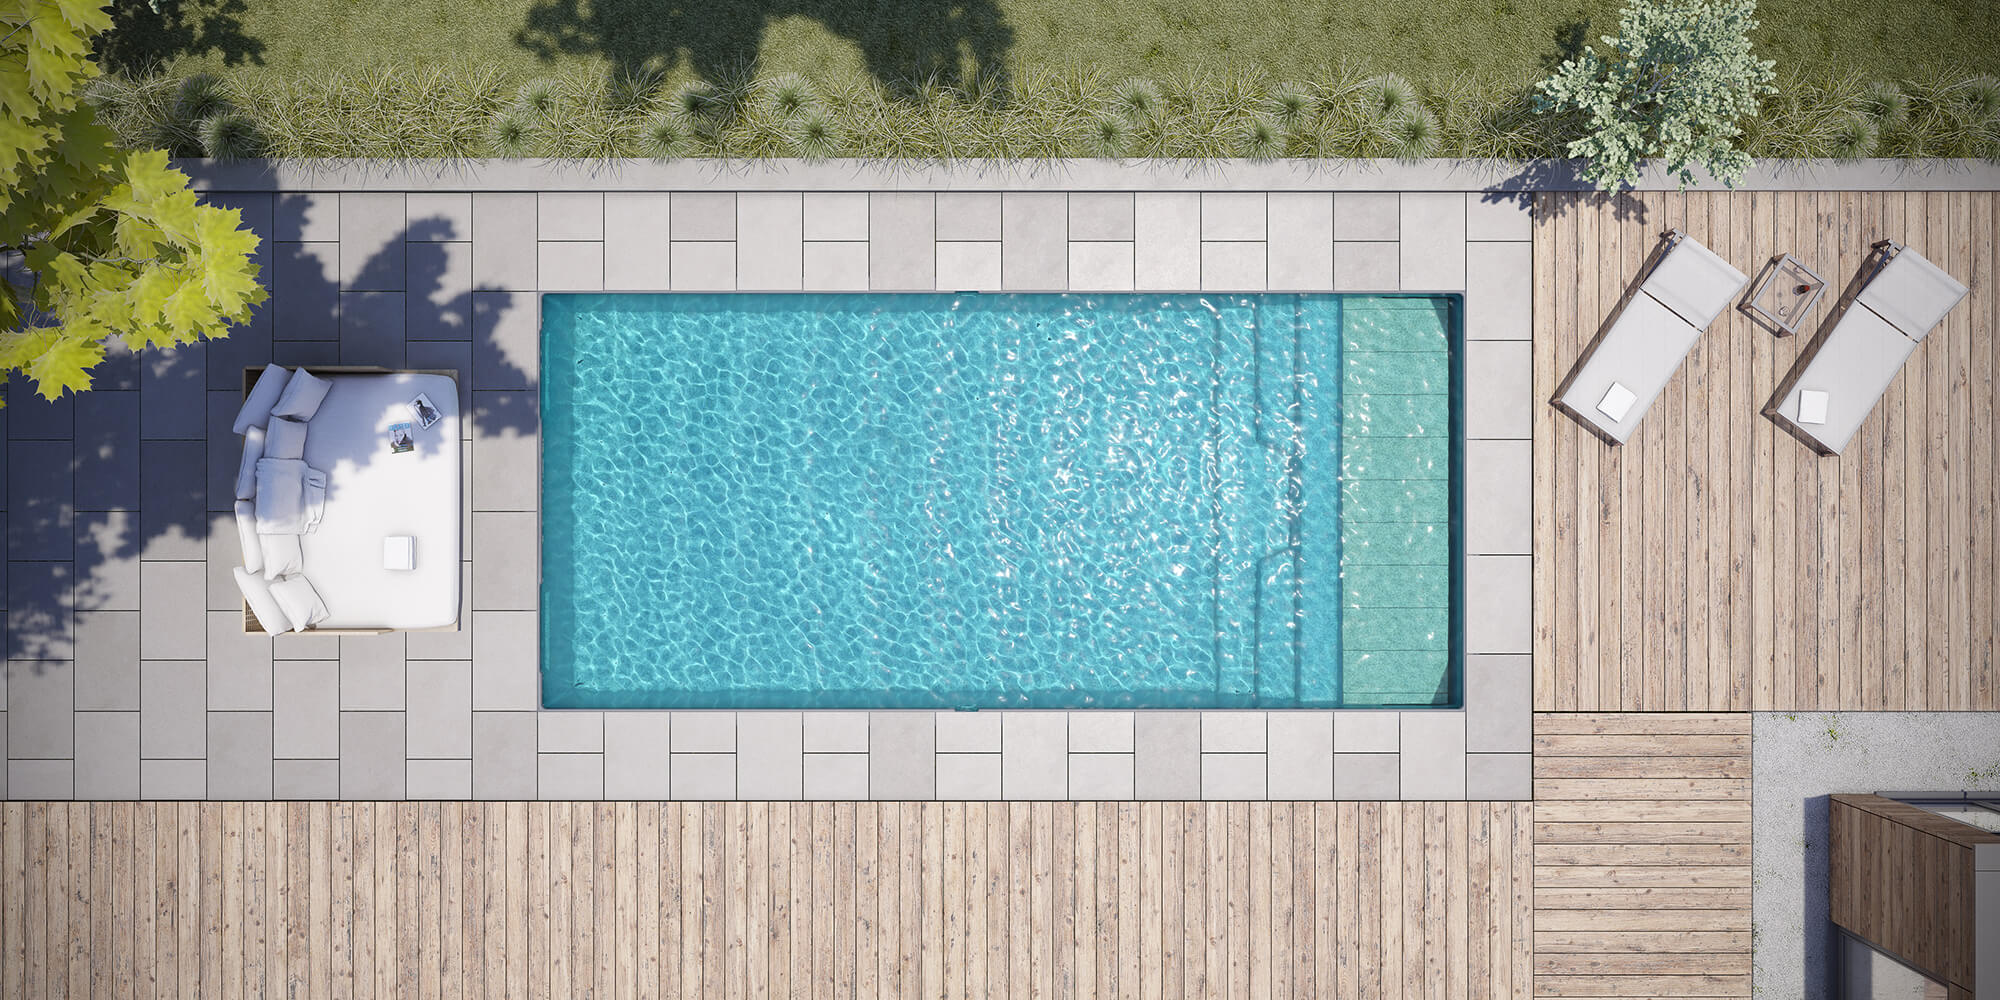 Devis électrolyse au sel de piscine gratuit : Prix et guide pratique